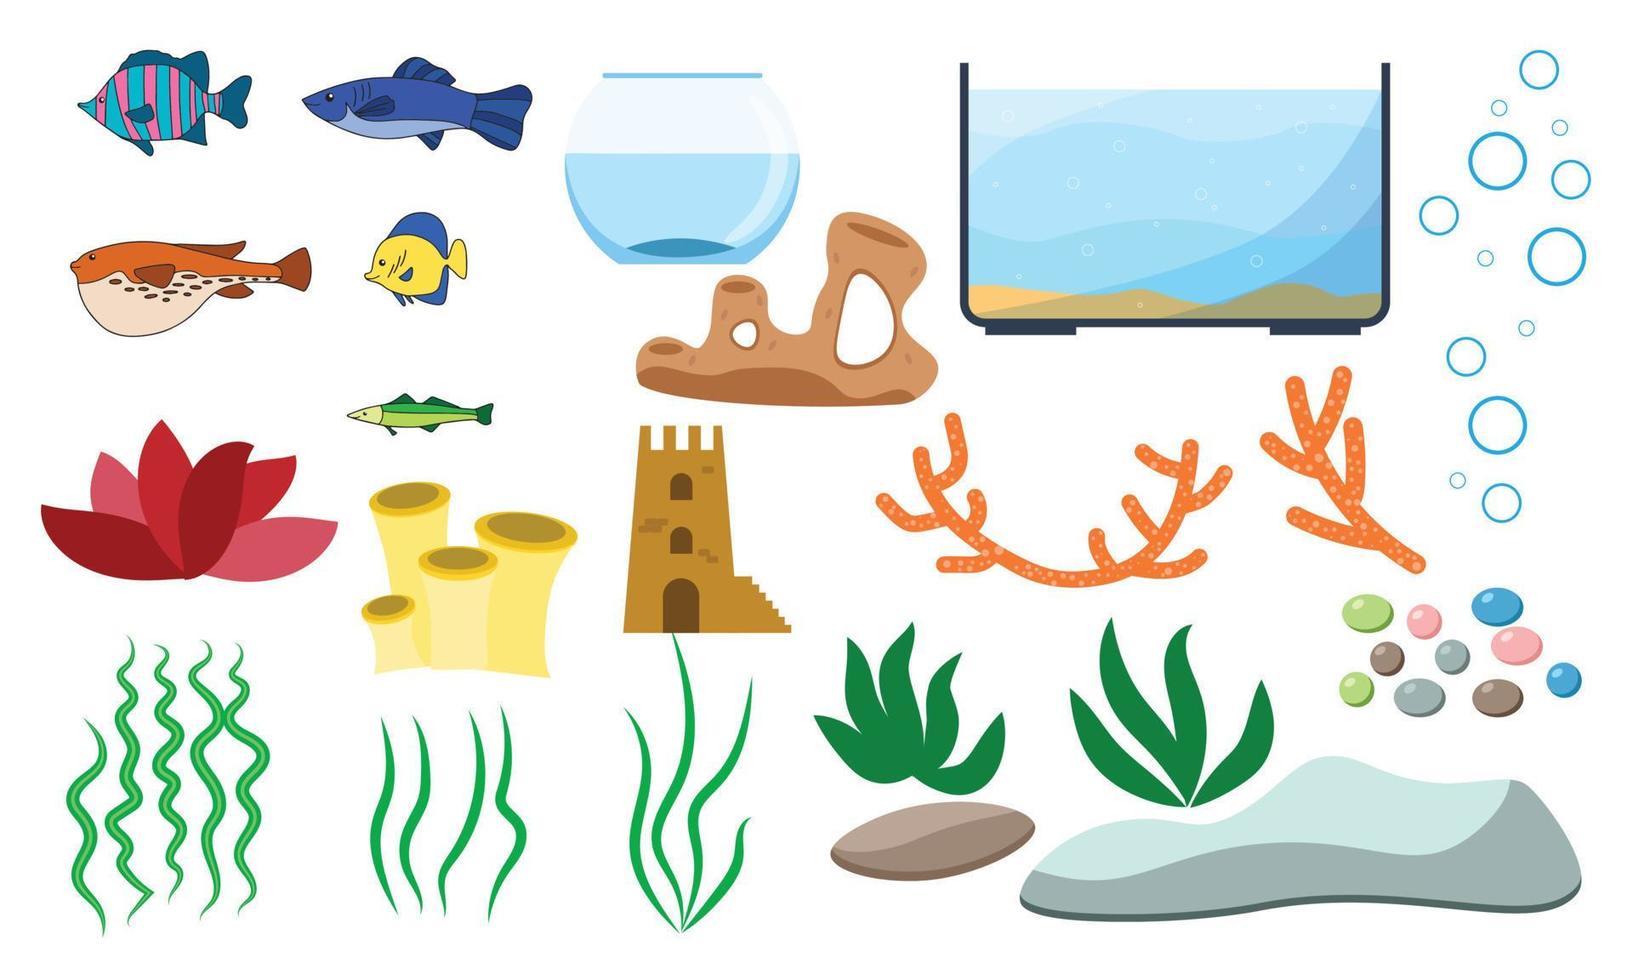 éléments vectoriels sous-marins d'aquarium isolés sur fond blanc. dessin animé d'aquariophilie serti d'aquarium poissons pierres algues coquillages et réservoirs d'aquarium de différentes formes. vecteur